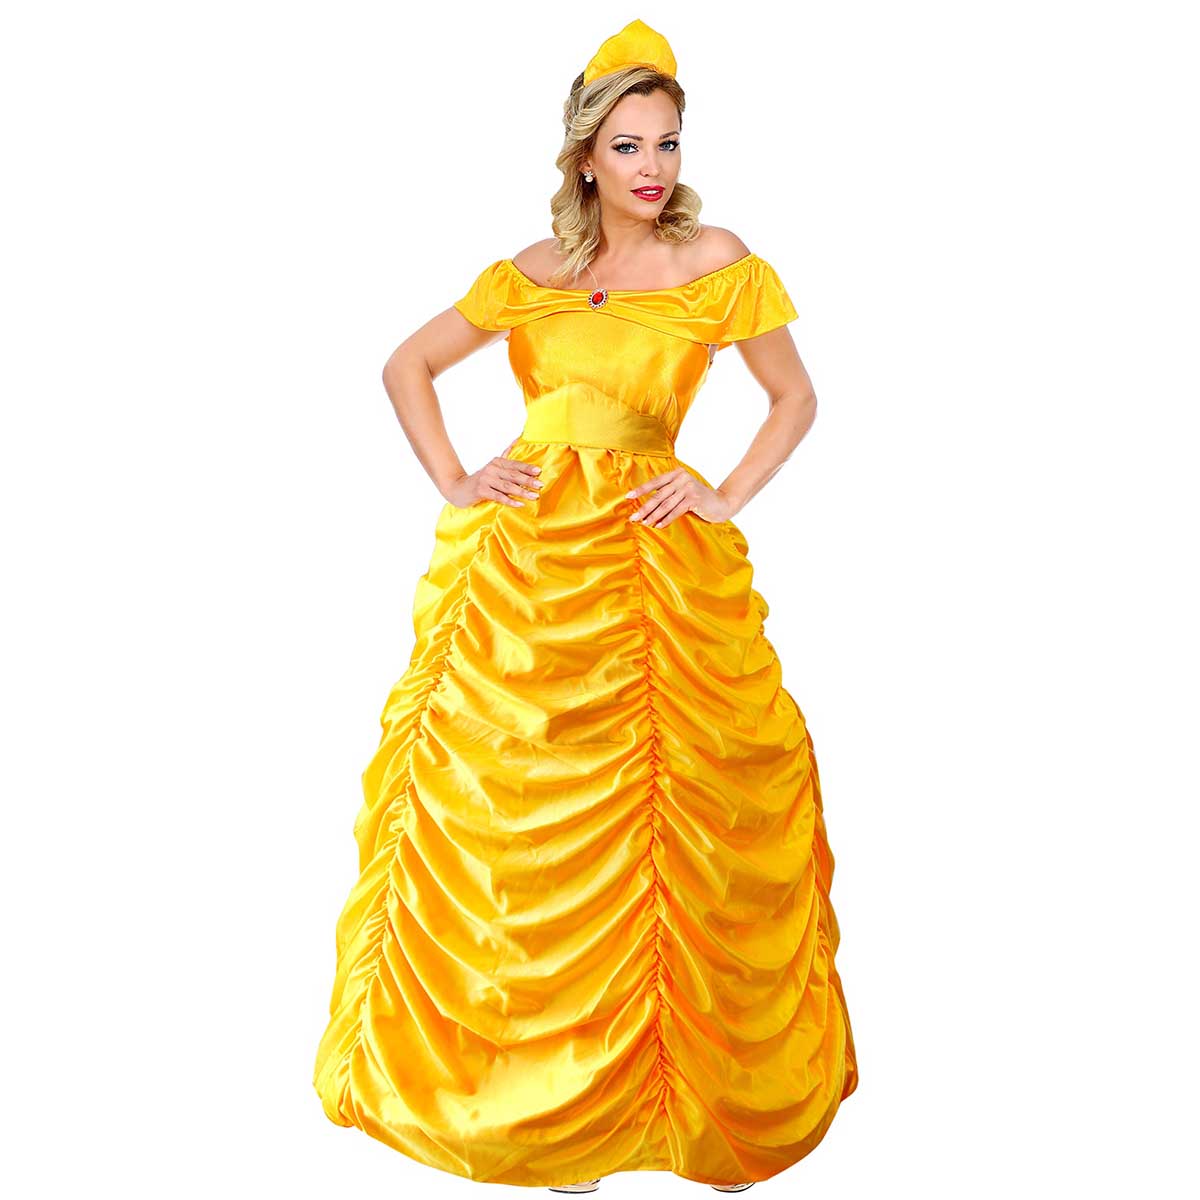 Prinsessklänning, gul S